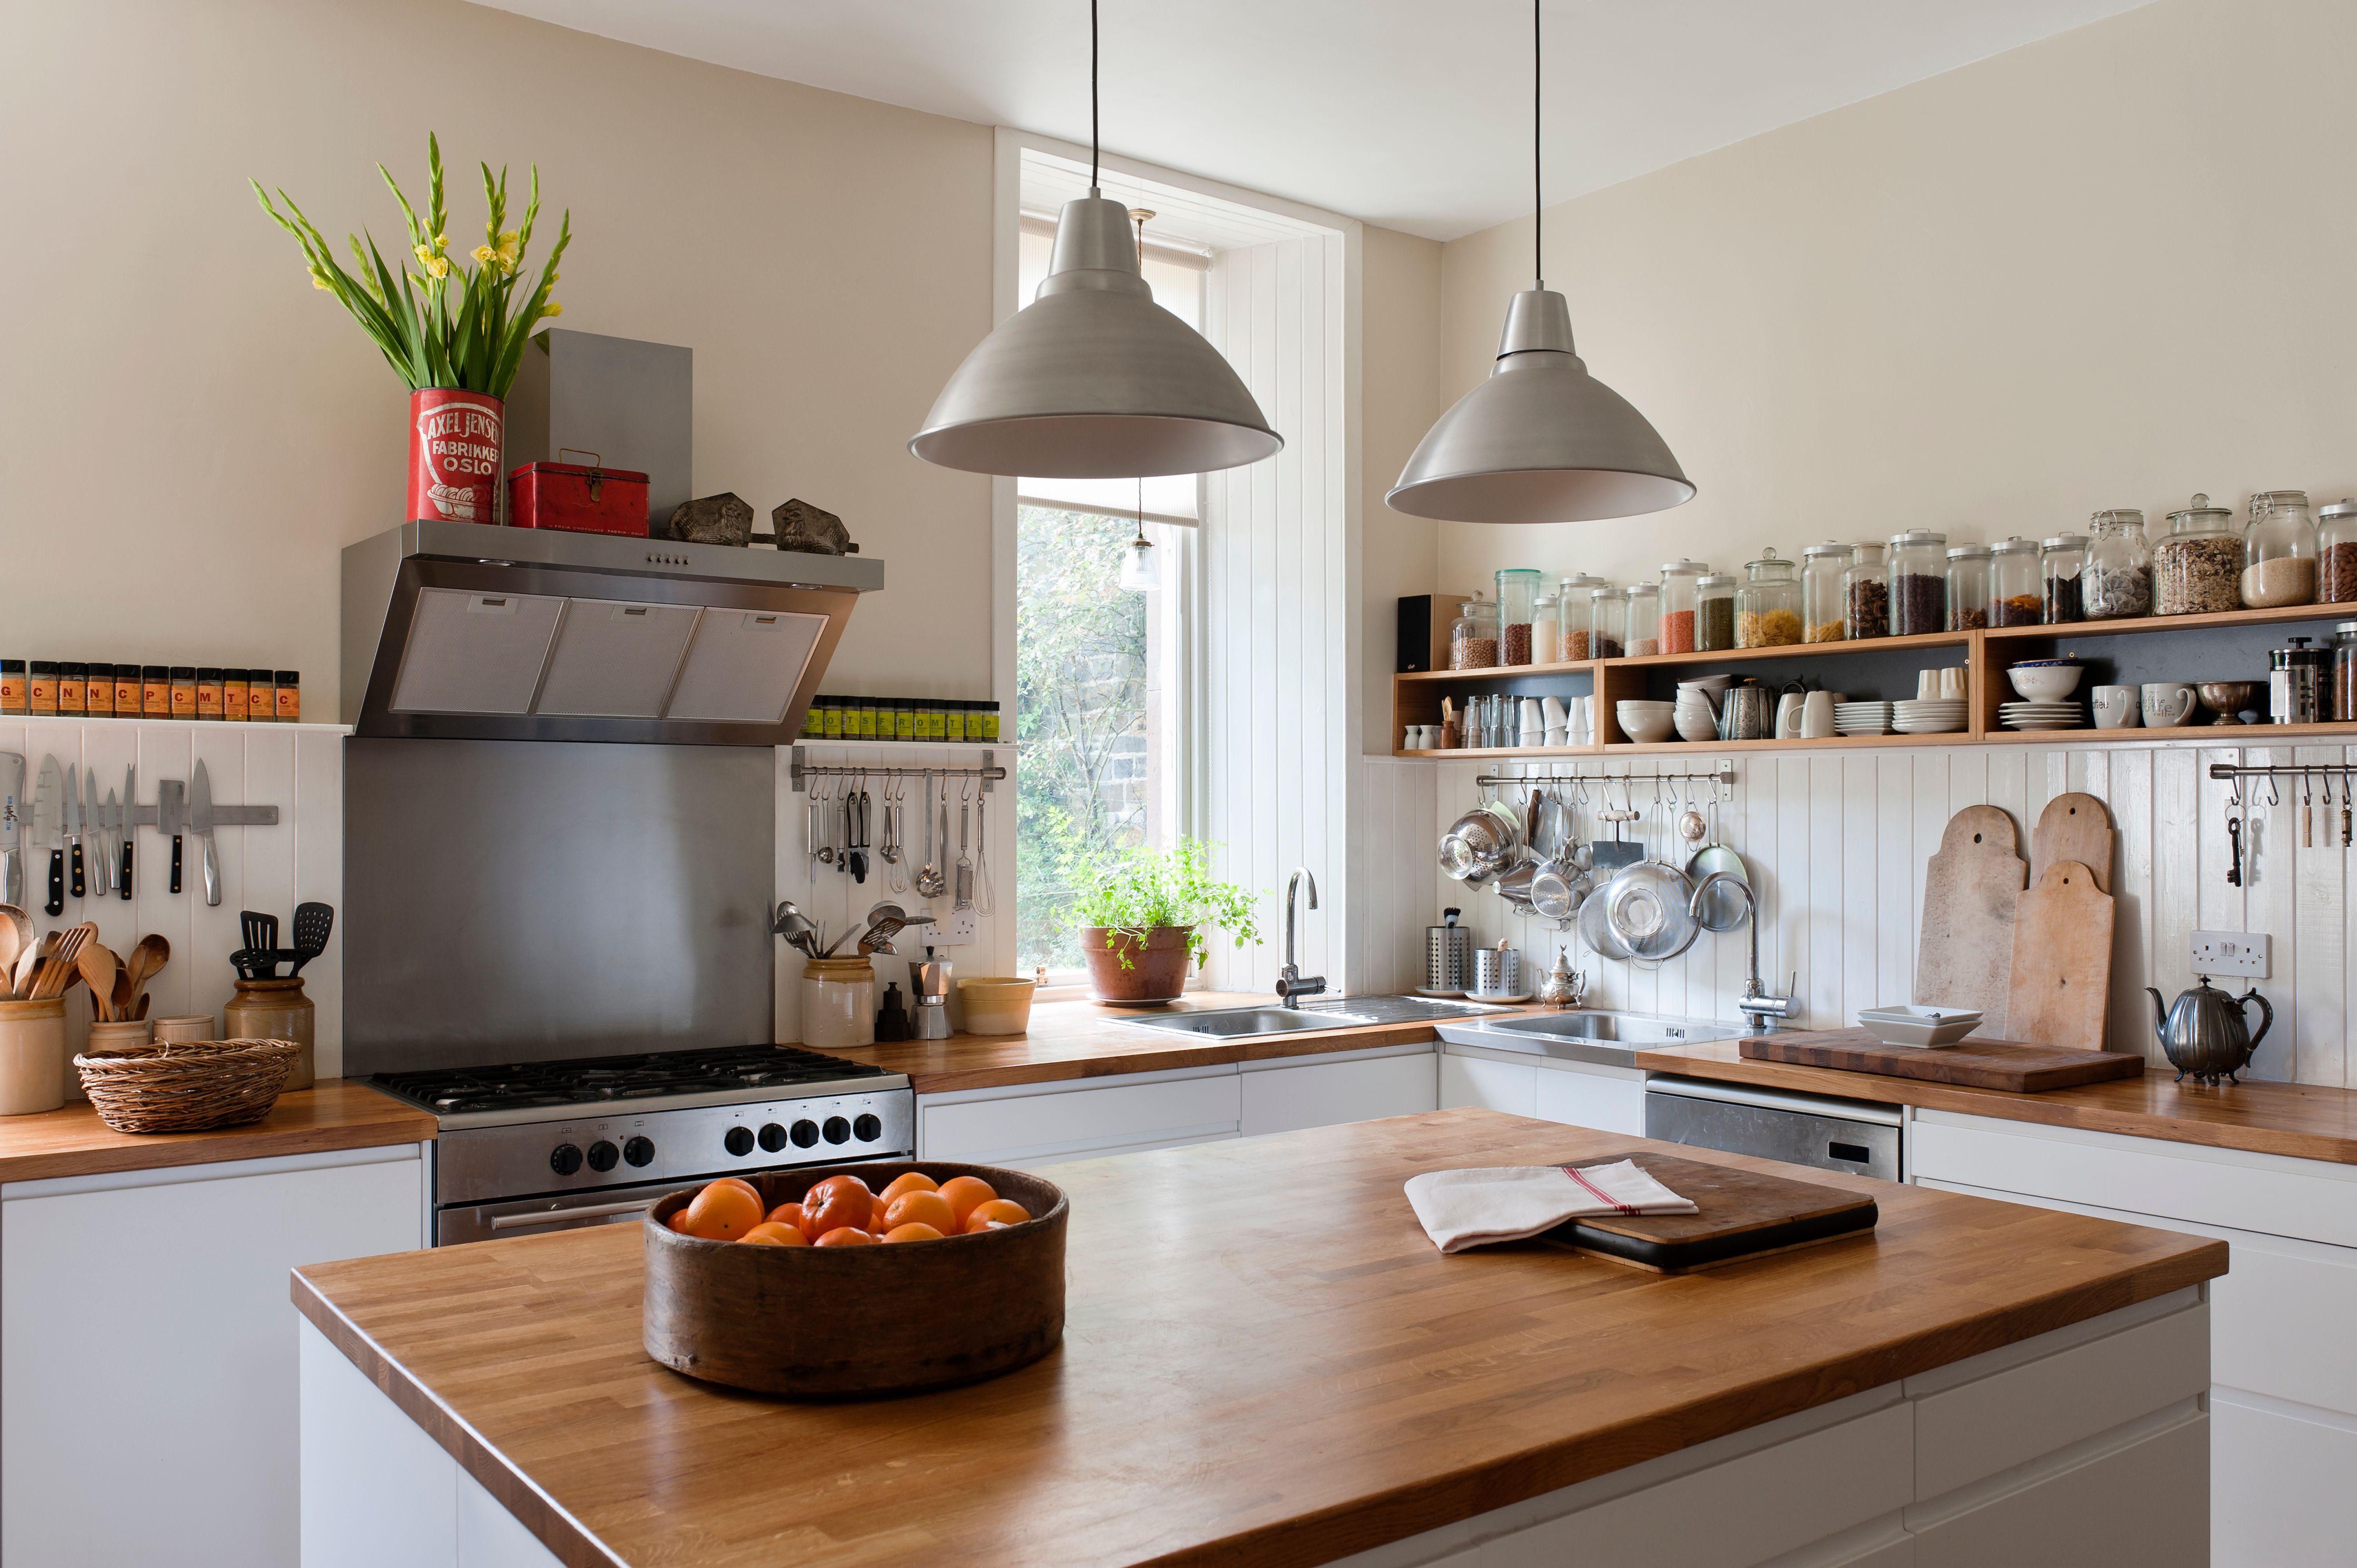 Une cuisine moderne avec des tomates sur la table. | Source : Getty Images